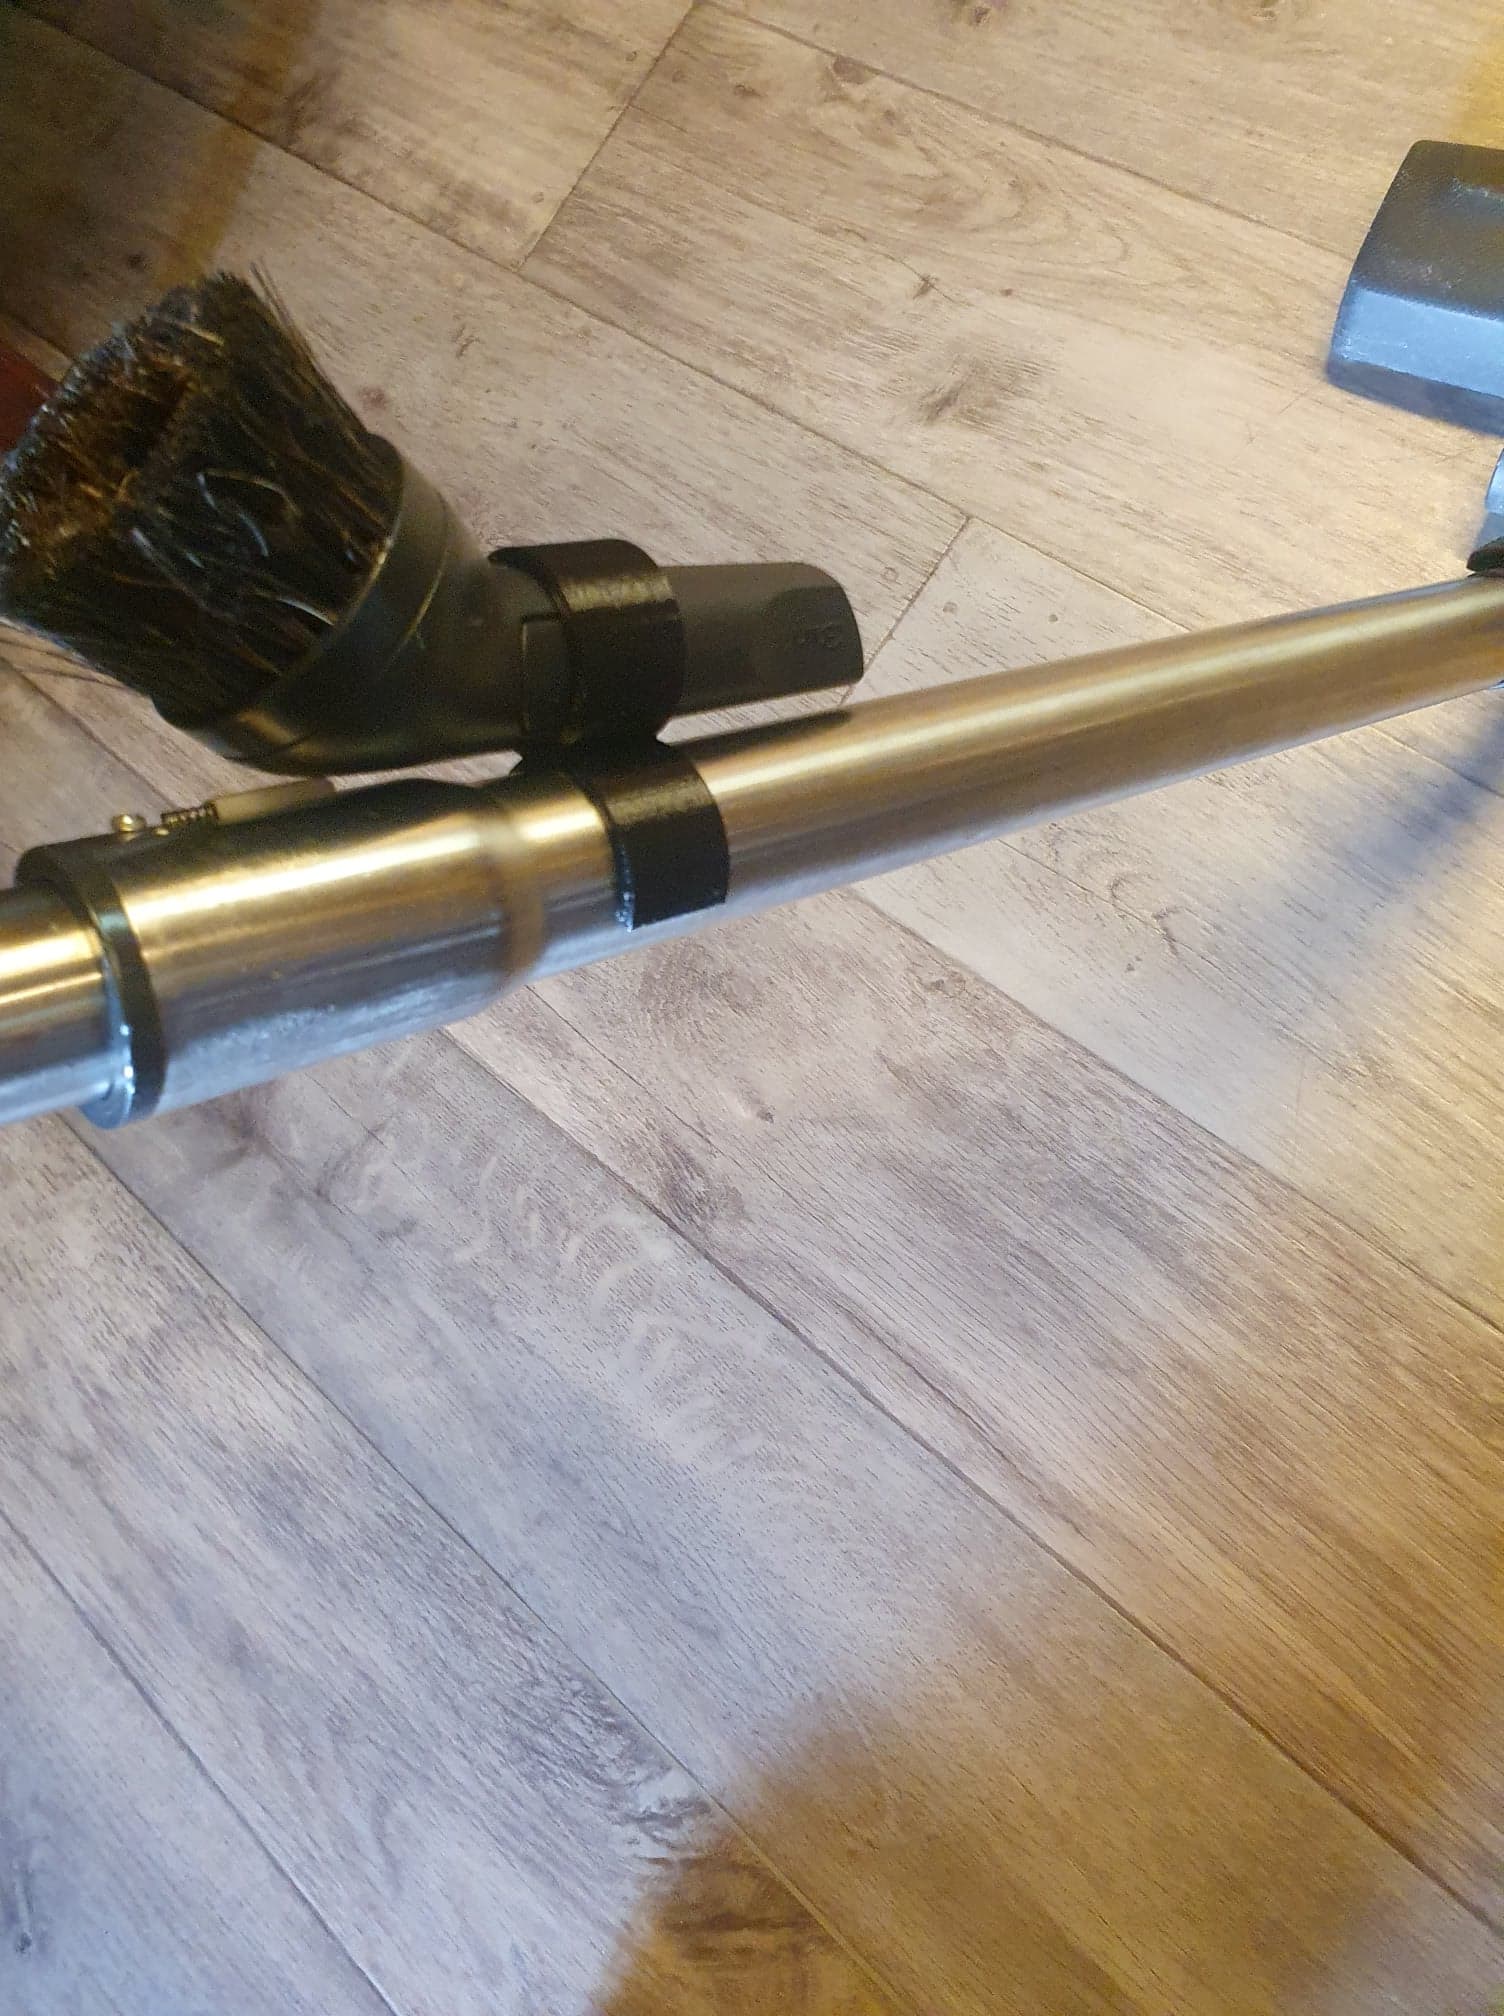 Brush holder for vacuum cleaner